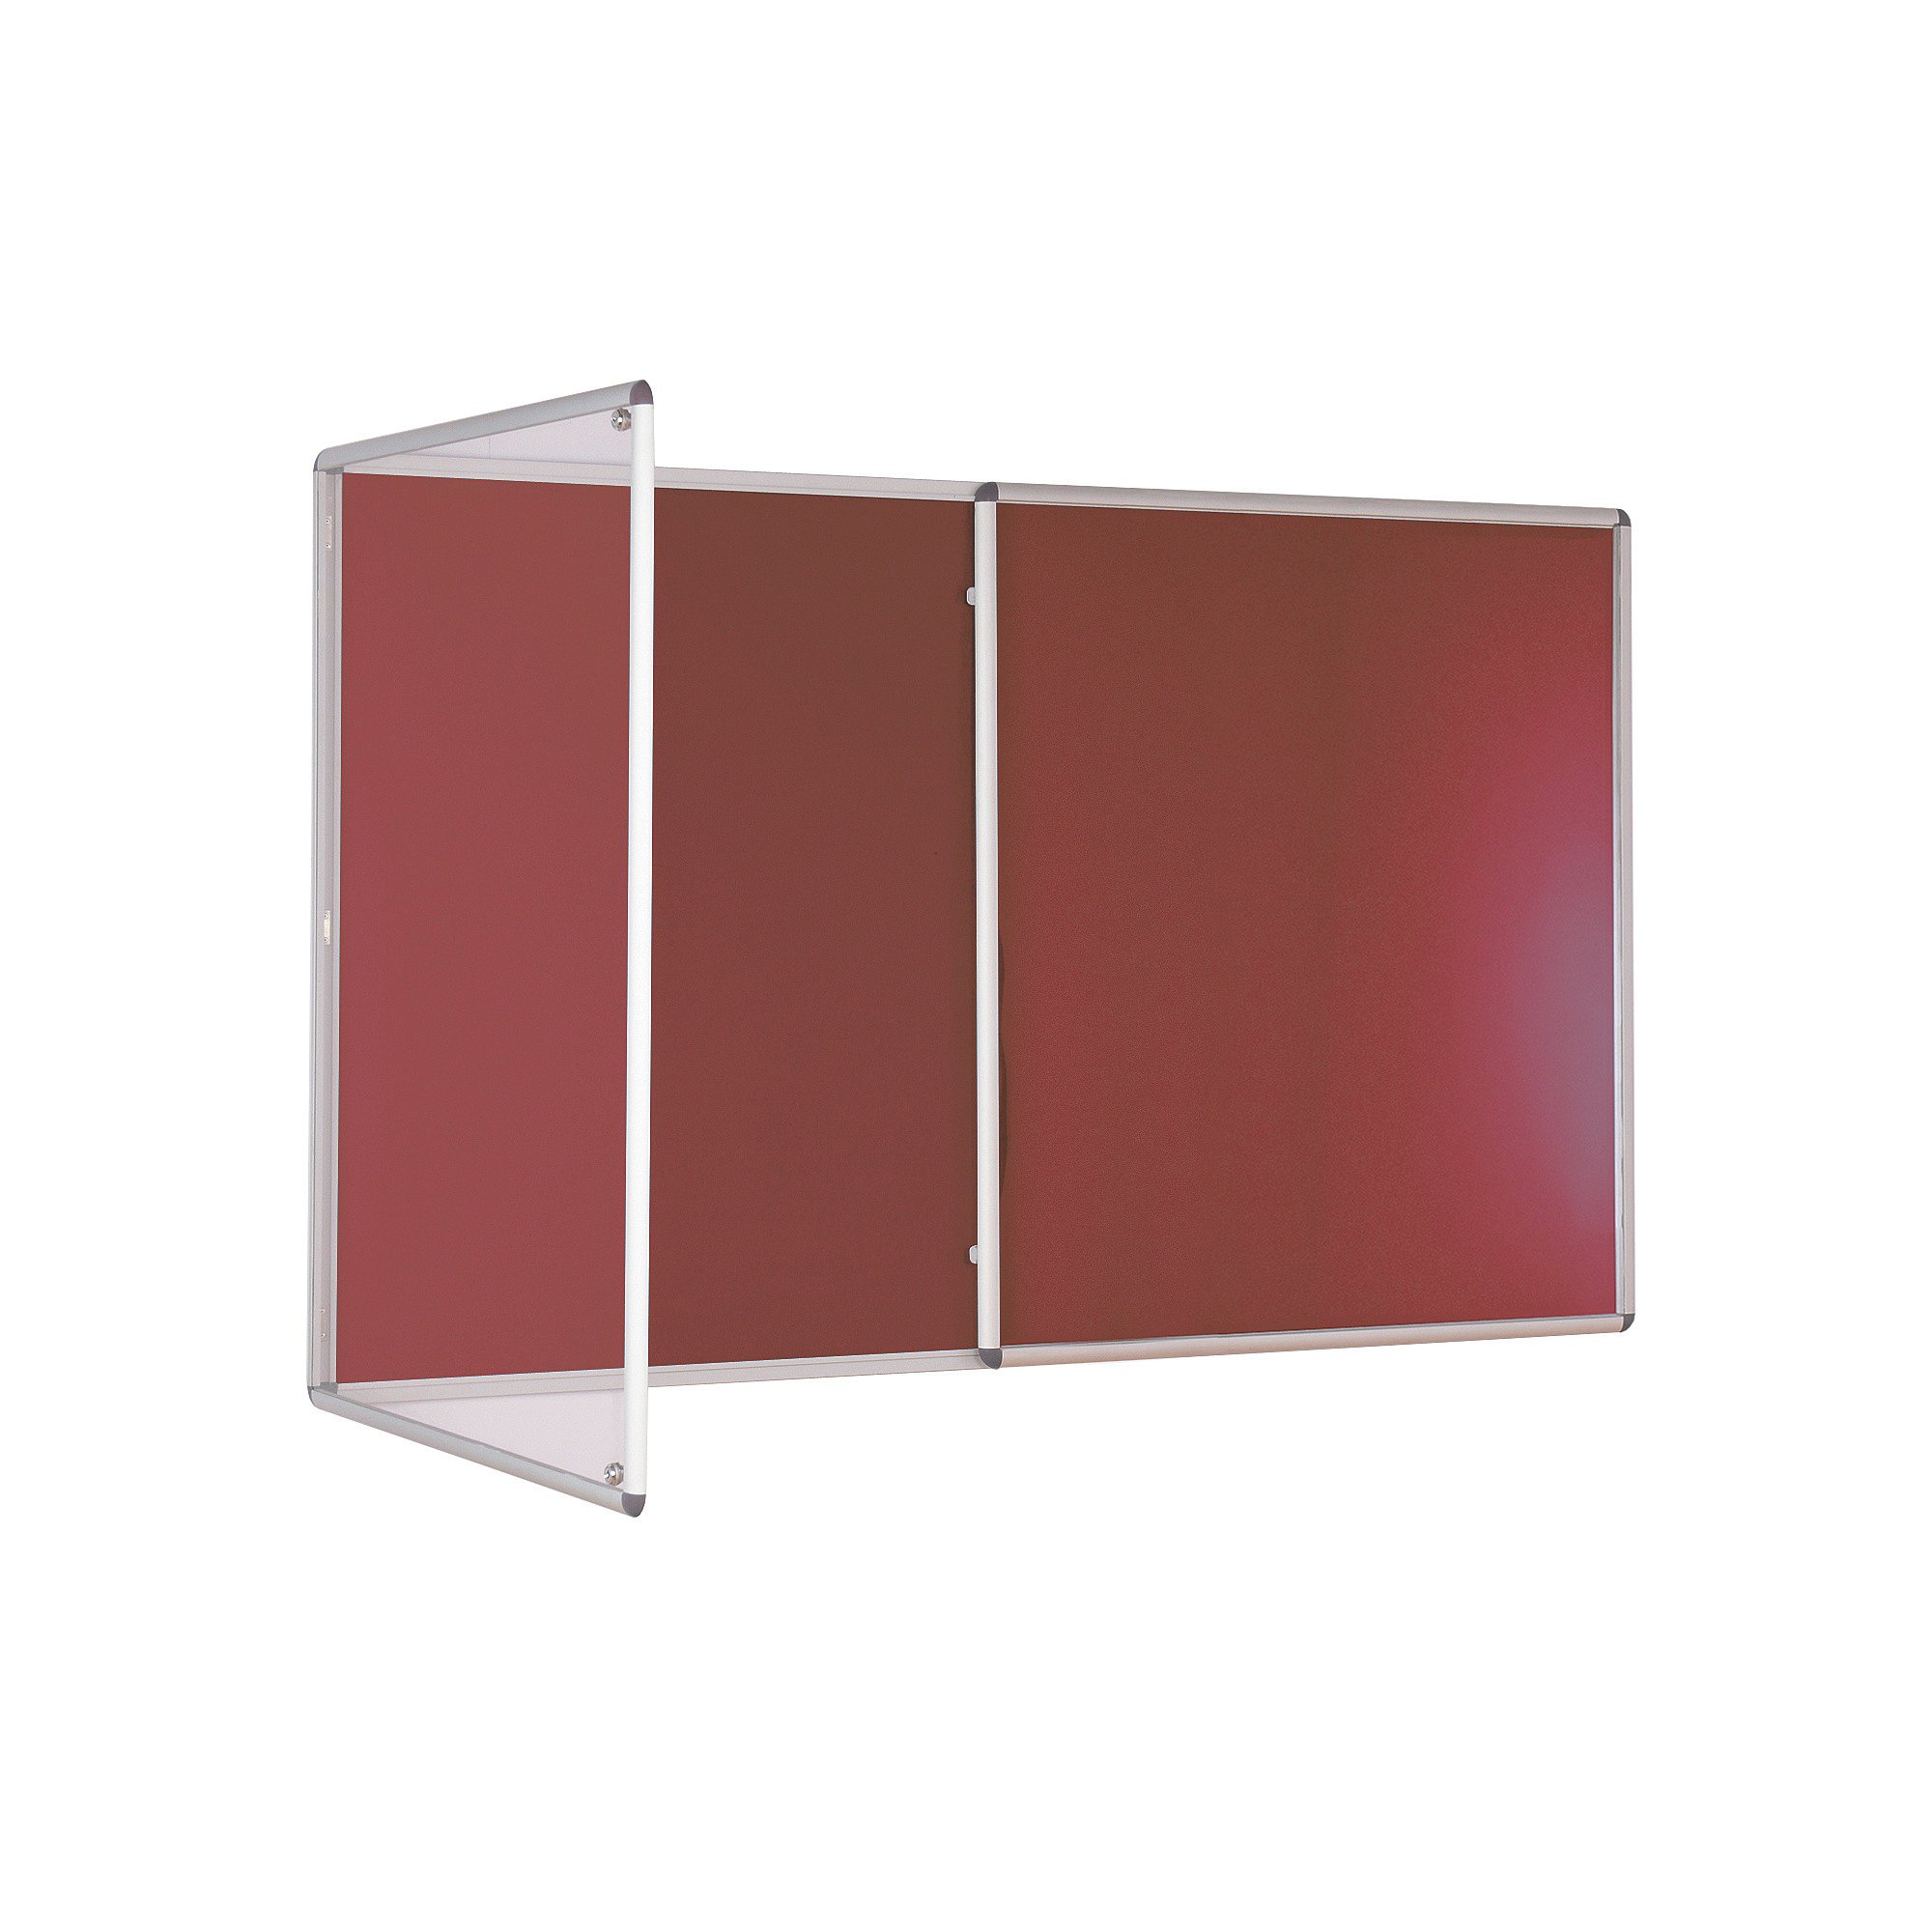 Tamperproof noticeboard, 2400x1200 mm, burgundy